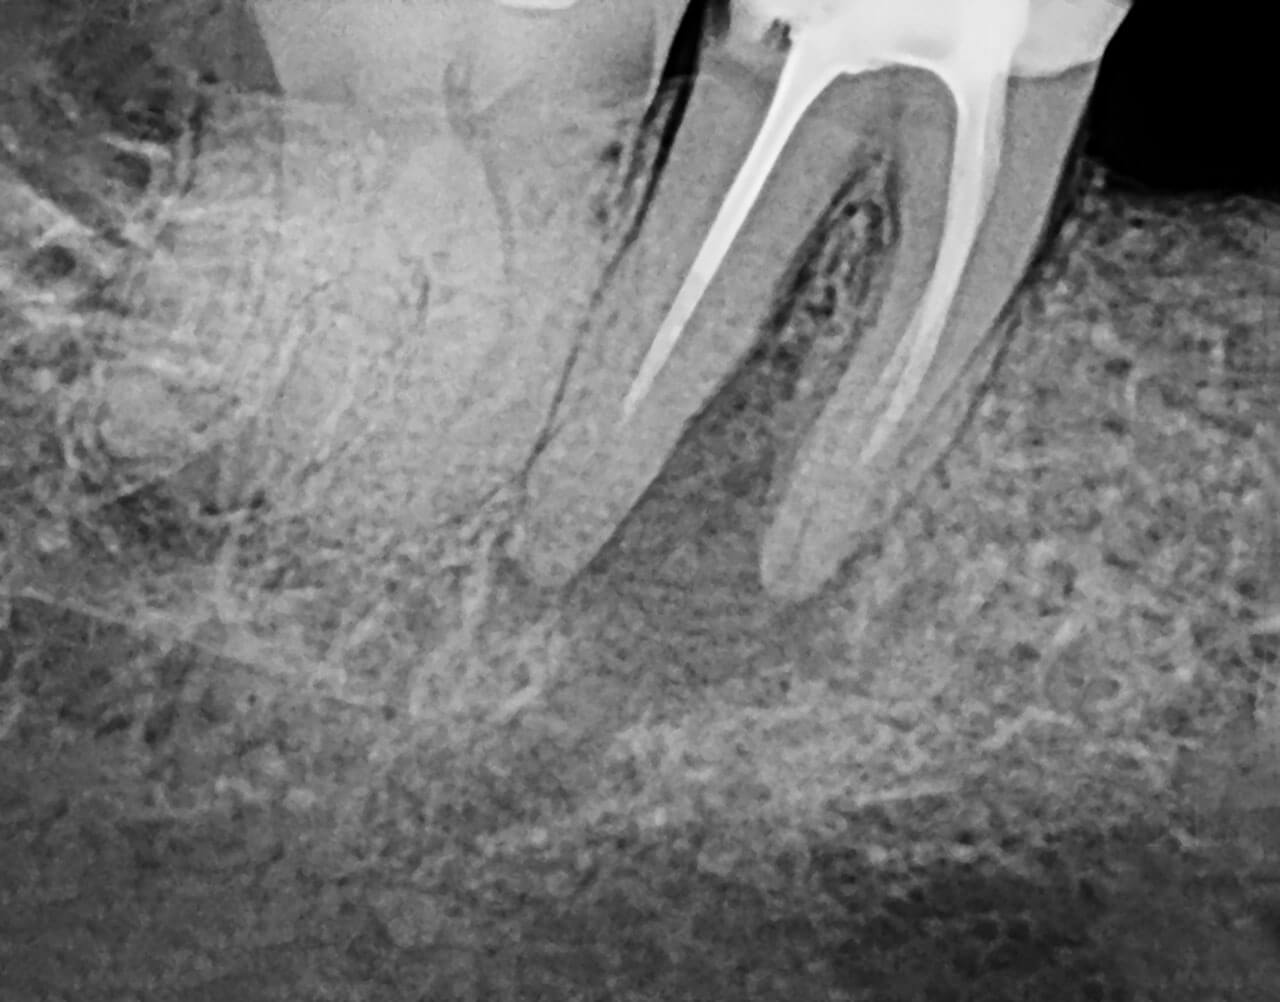 Abb. 1 Bild vor der Erstrevisionsbehandlung alio loco mit apikaler Aufhellung an Zahn 47 im Jahr 2016.